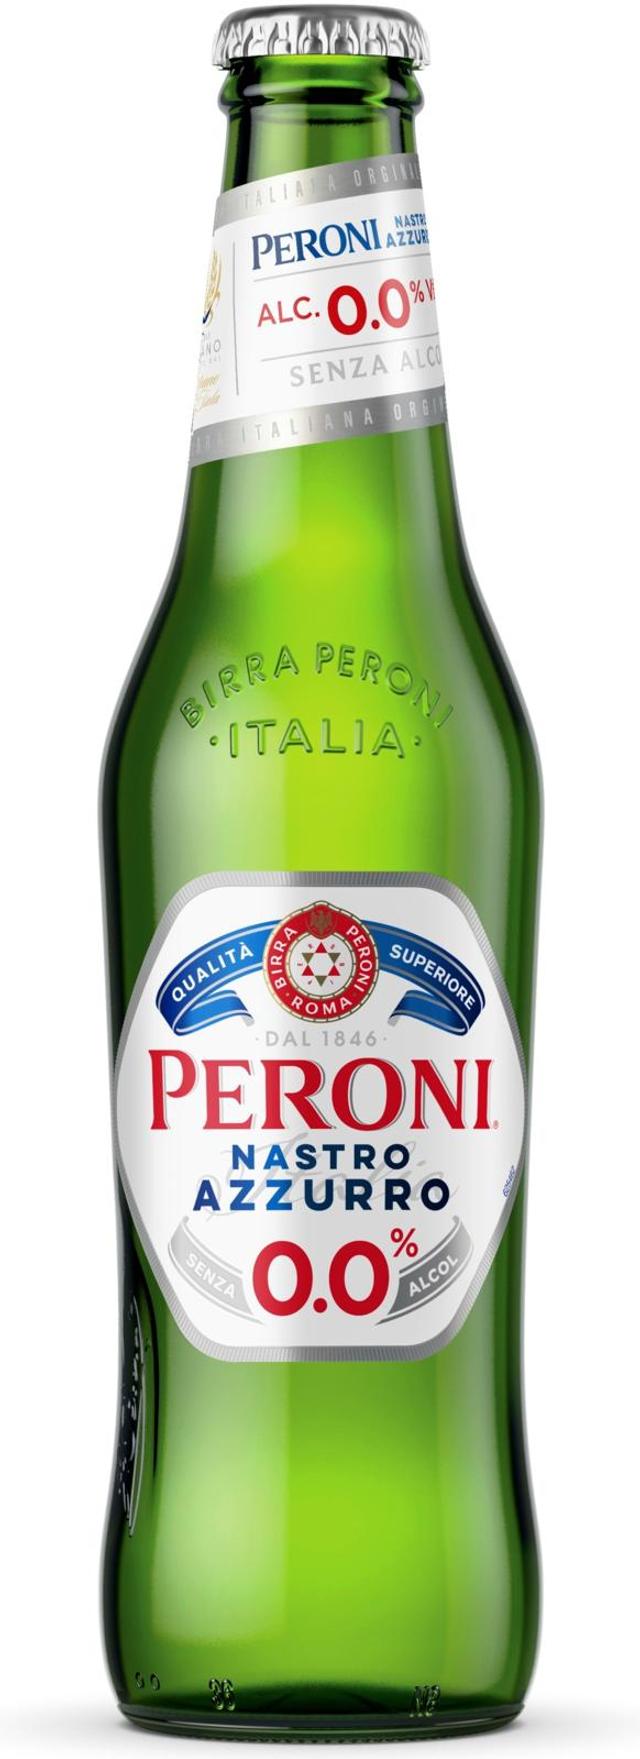 Peroni Nastro Azzurro alkoholiton olut 0,0% 33cl plo